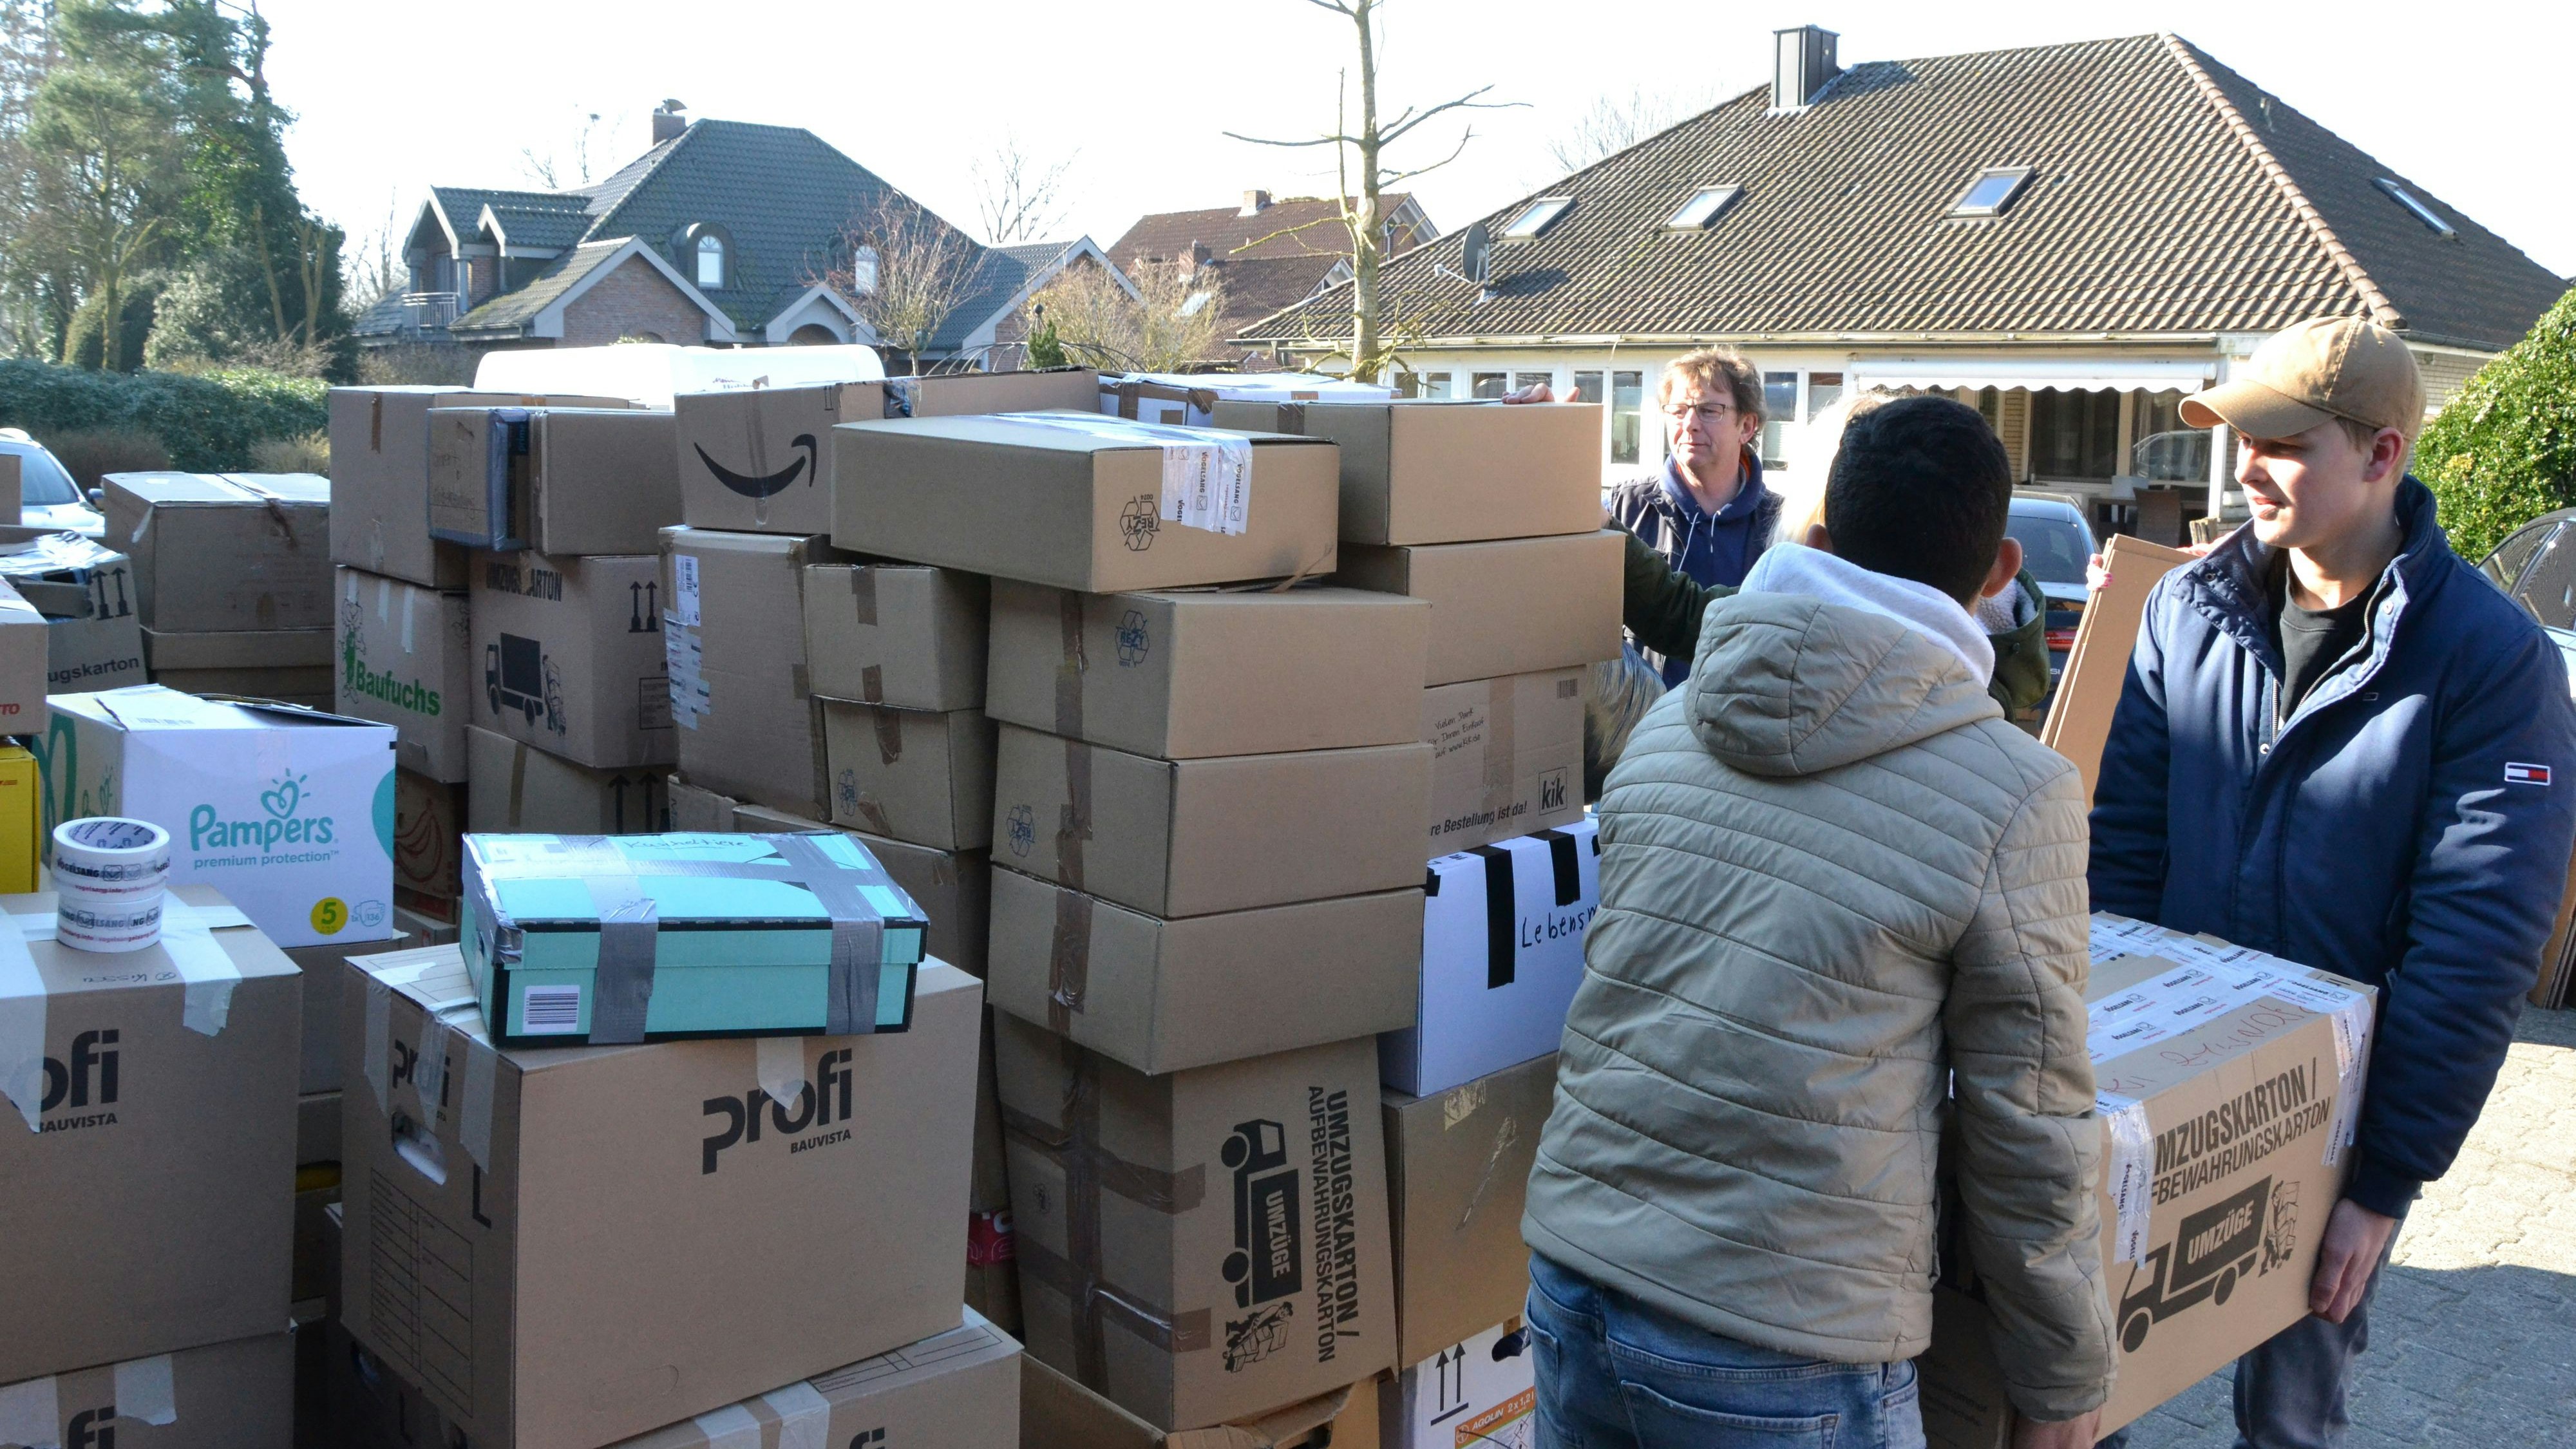 Riesiges Warenlager: In Löningen stapelten Freiwillige die Kartons mit Hilfsgütern.&nbsp; &nbsp;Foto: G. Meyer